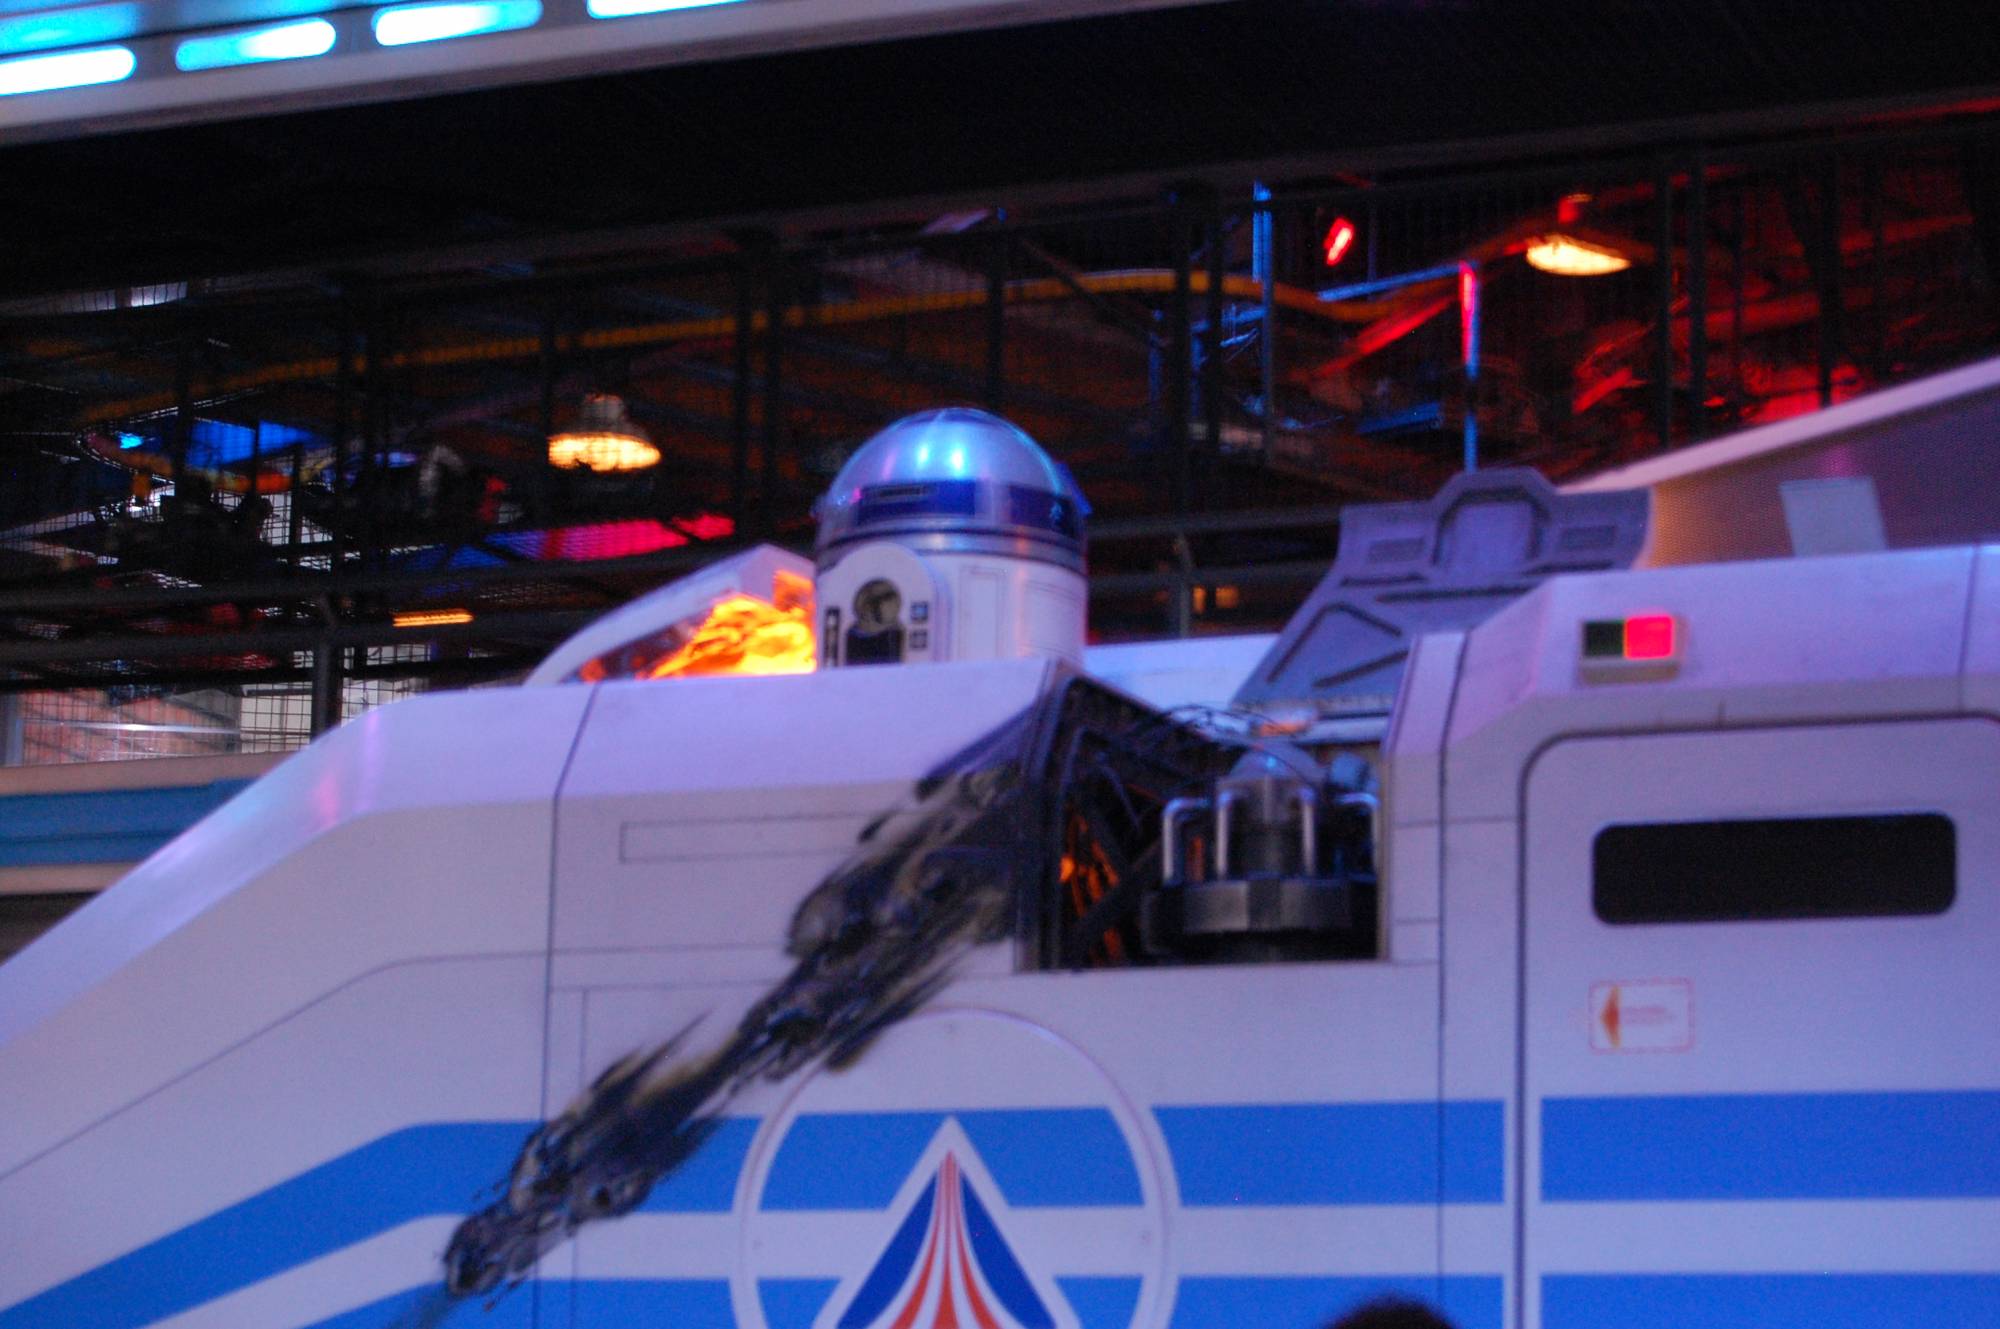 Disneyland Park: Star Tours Queue: R2-D2